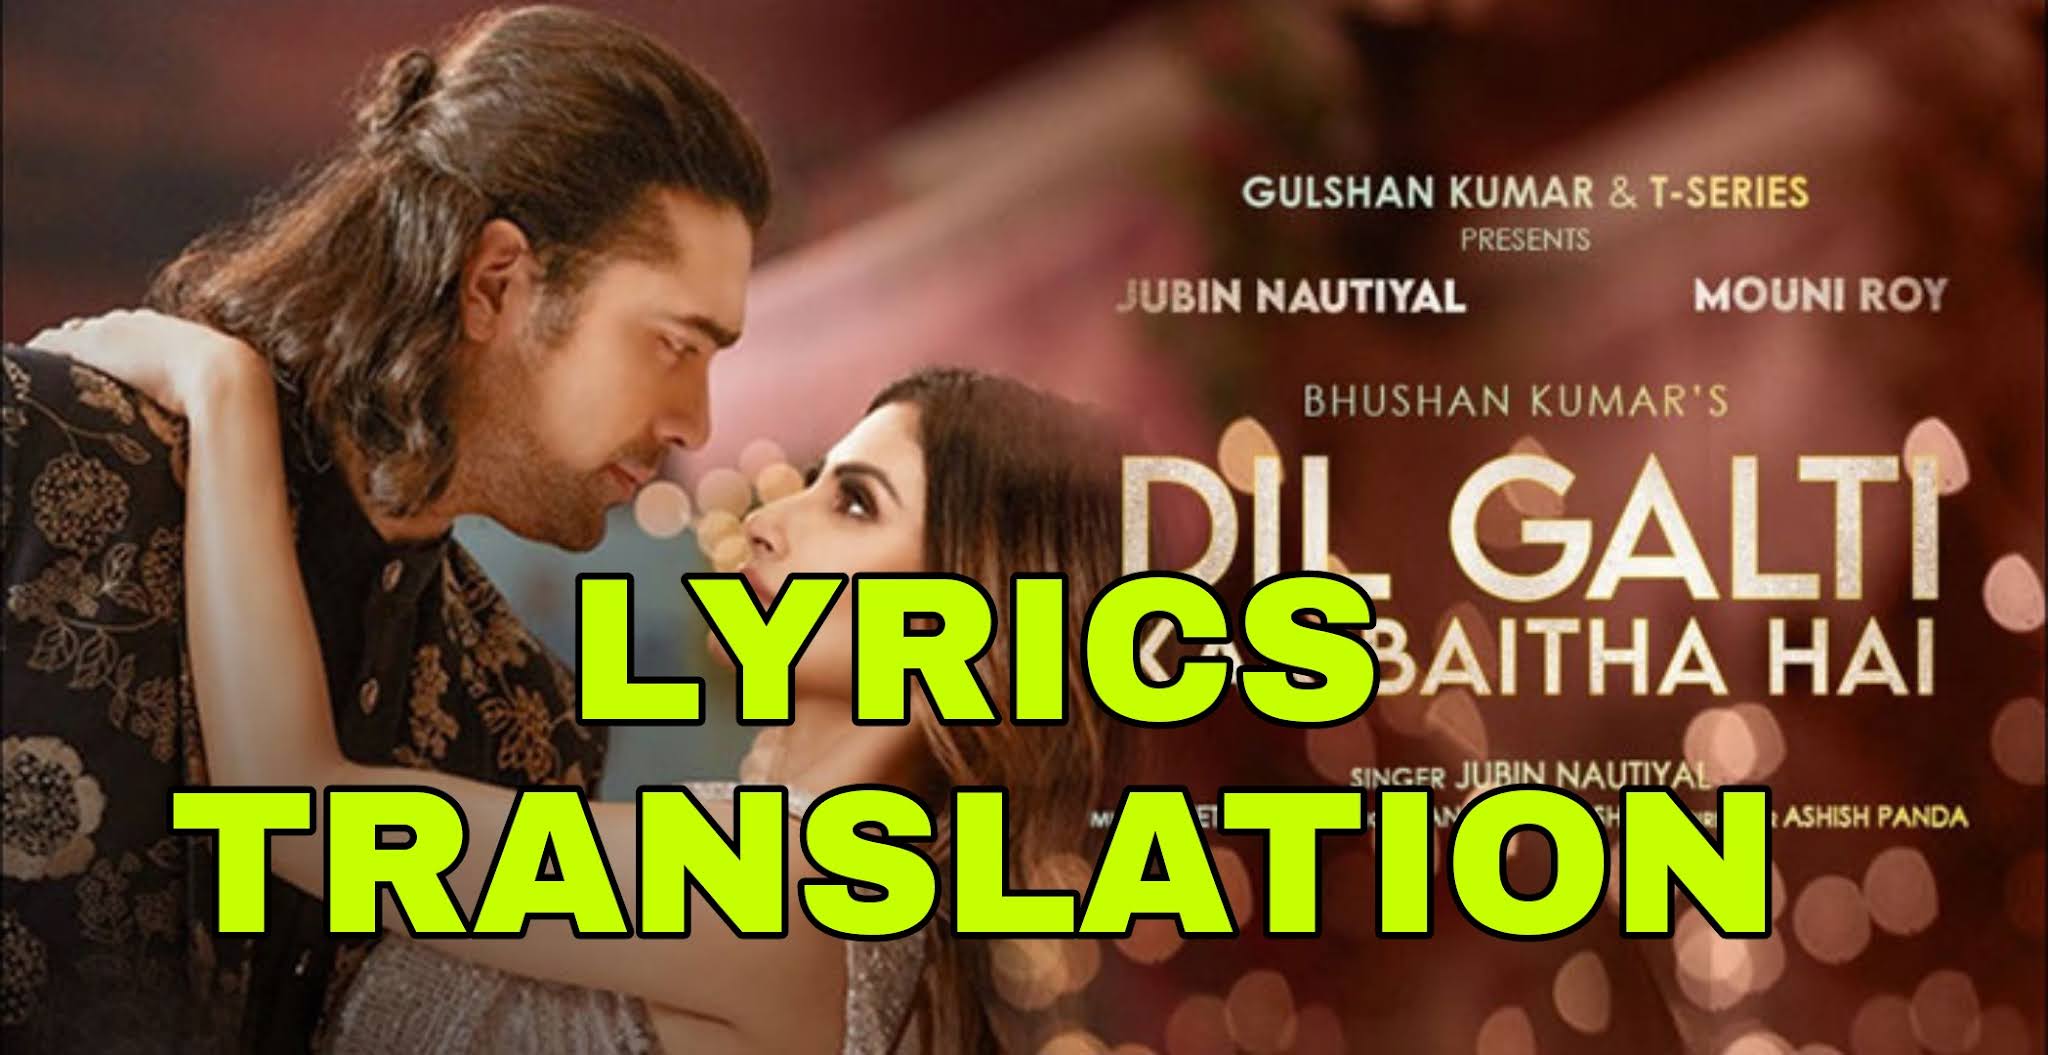 Dil Galti Kar Baitha Hai Lyrics In English With Translation Jubin Nautiyal Lyrics Translaton